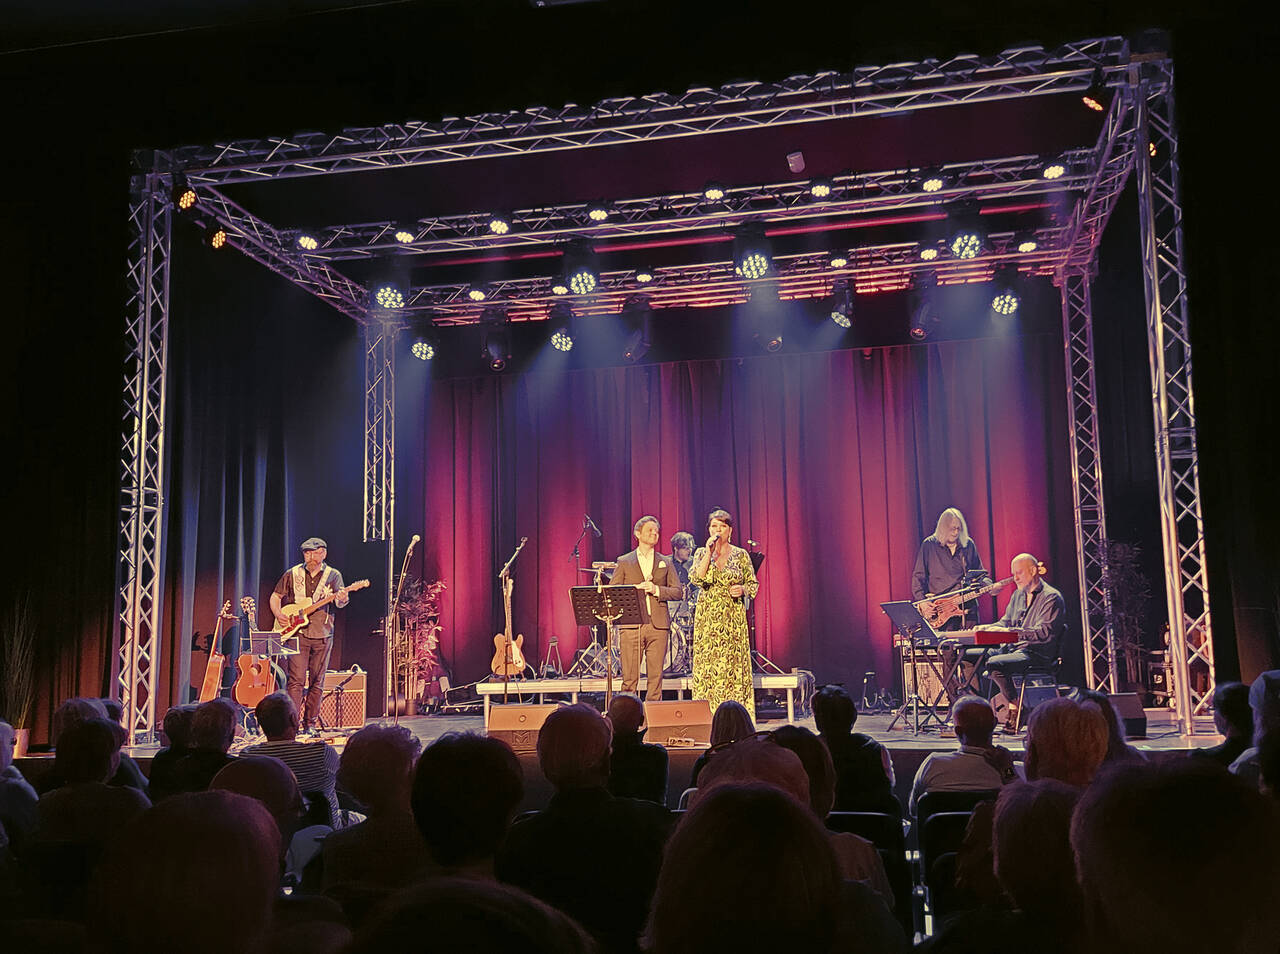 En trivelig konsert i kulturfabrikken med mange kjente lokale artister. Her synger Inger Lise Bøe sammen med Ole Andreas Silseth. Foto: Terje Holm